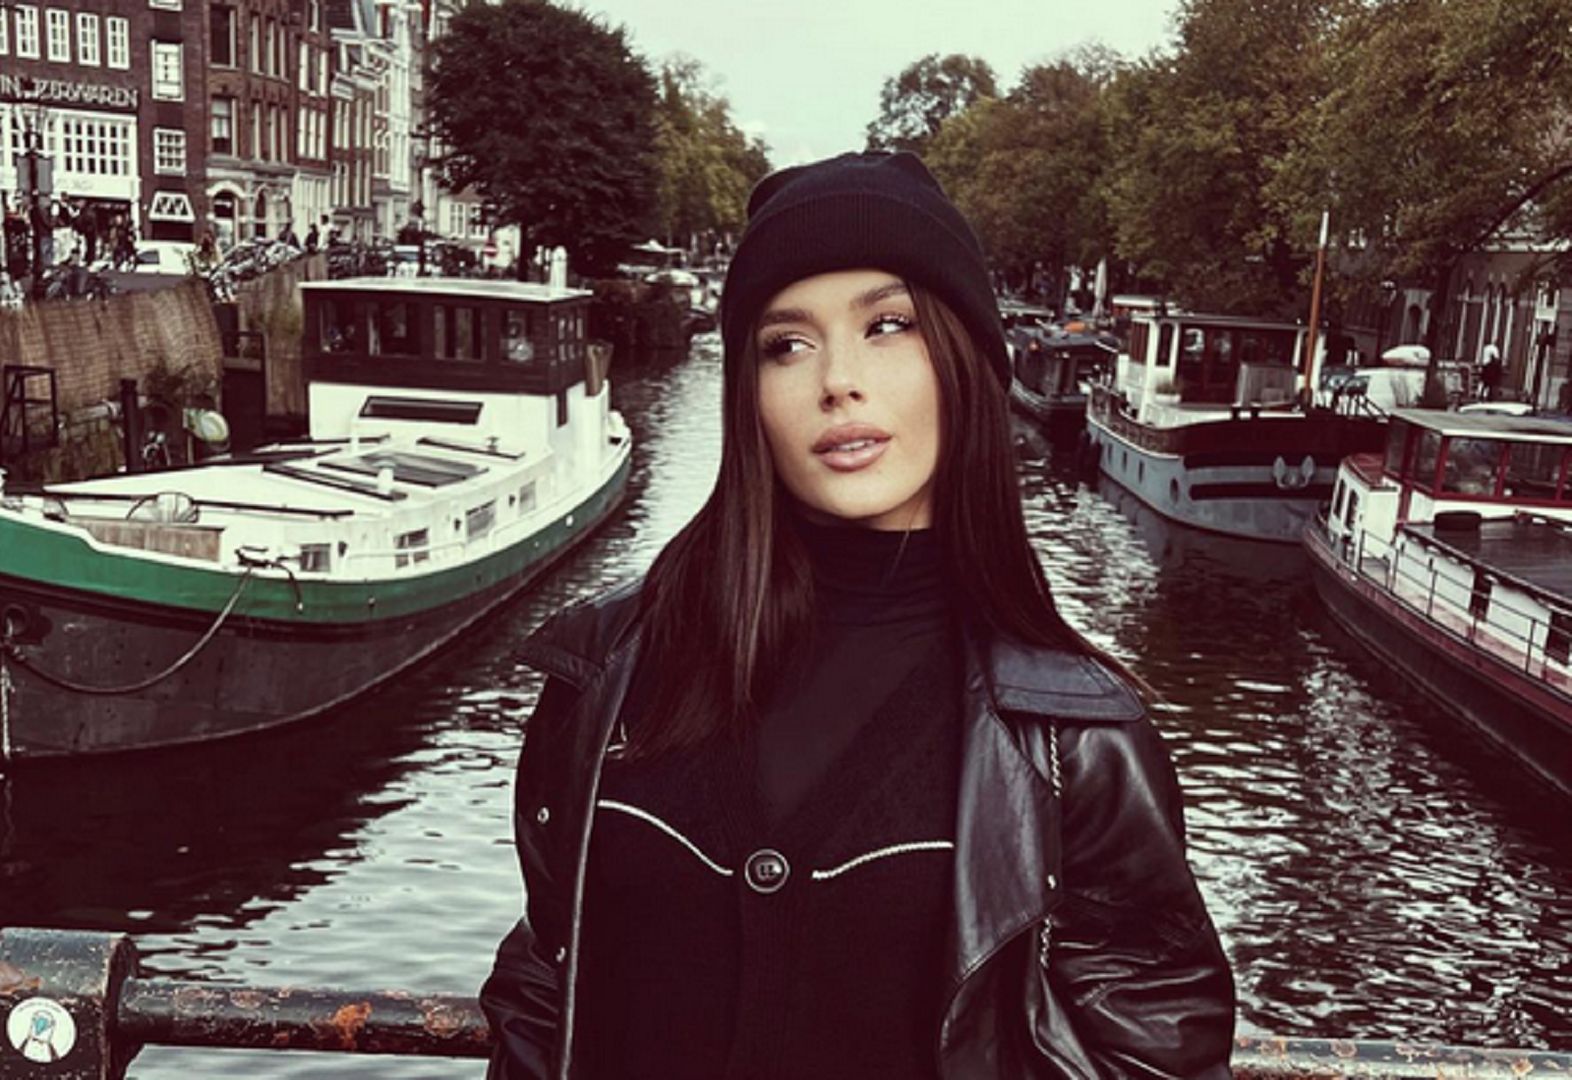 Patrzą na 18-letnią Roxie Węgiel w Amsterdamie. Ludzie zgodni